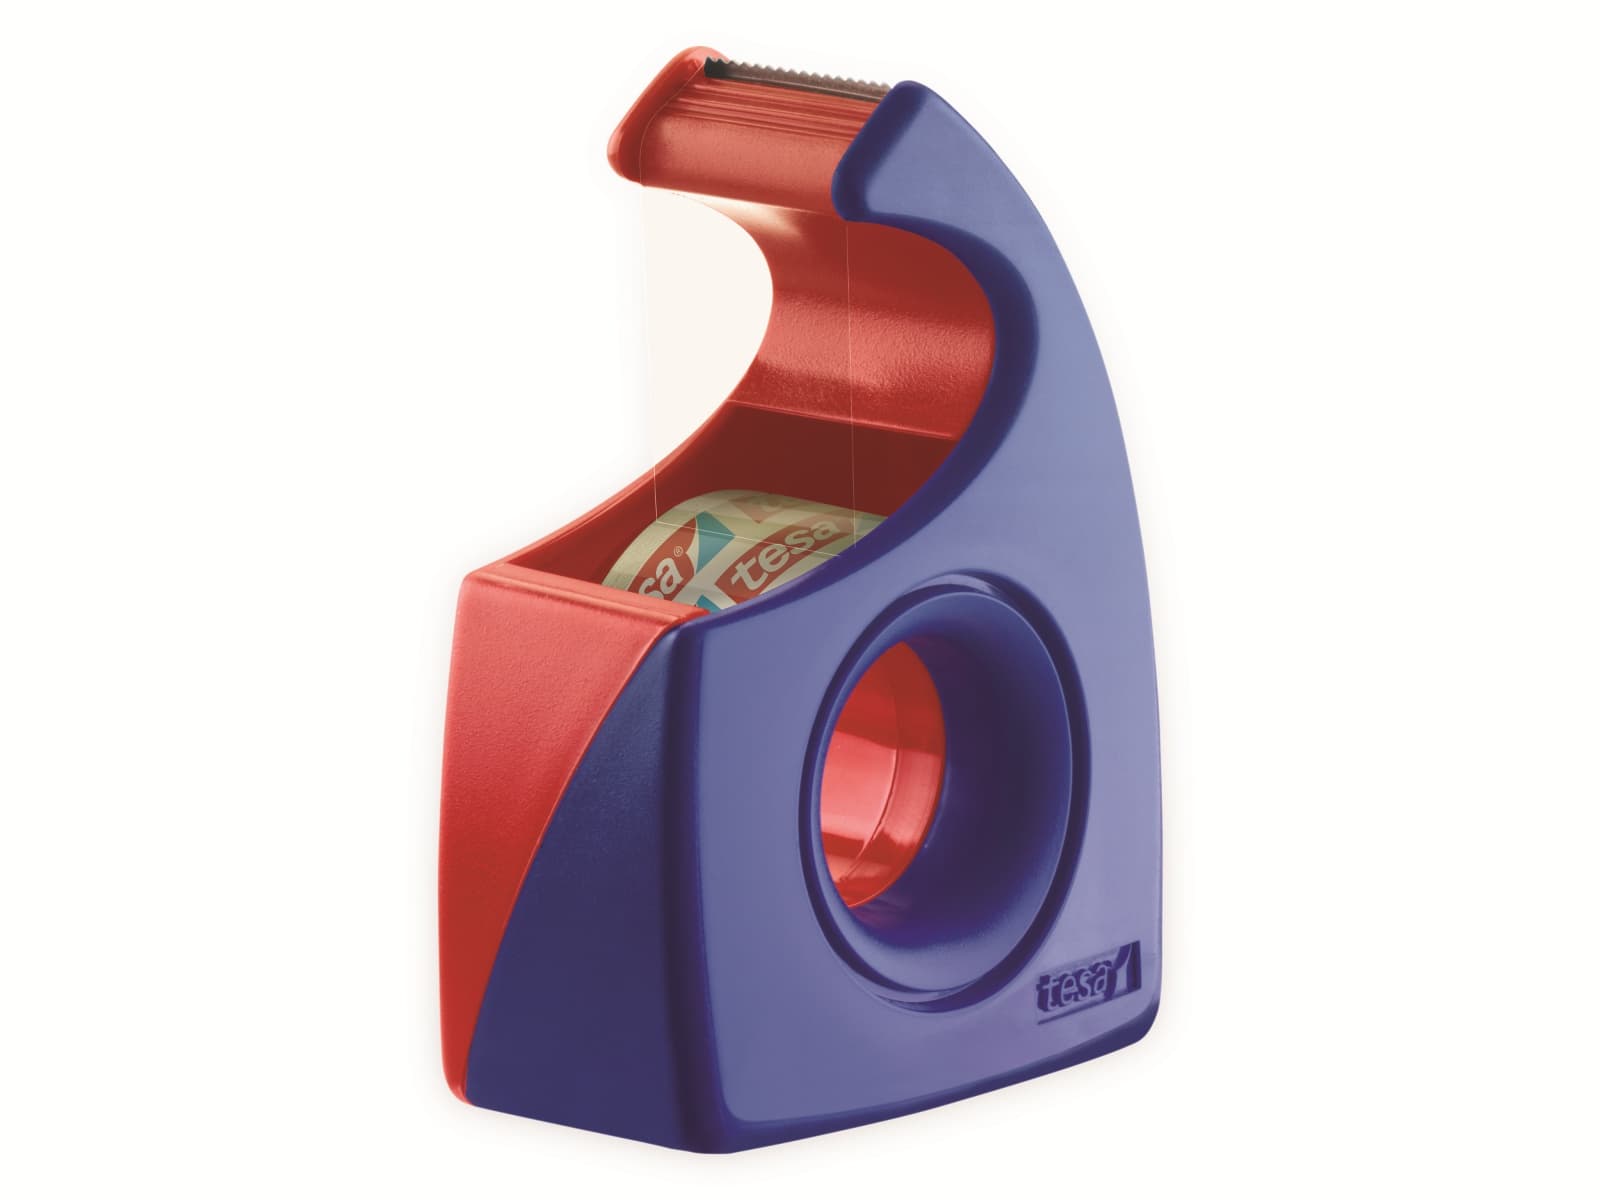 TESA ® Easy Cut Handabroller 10:19 rot-blau, leer, bis 10m:19mm, 57443-00001-01